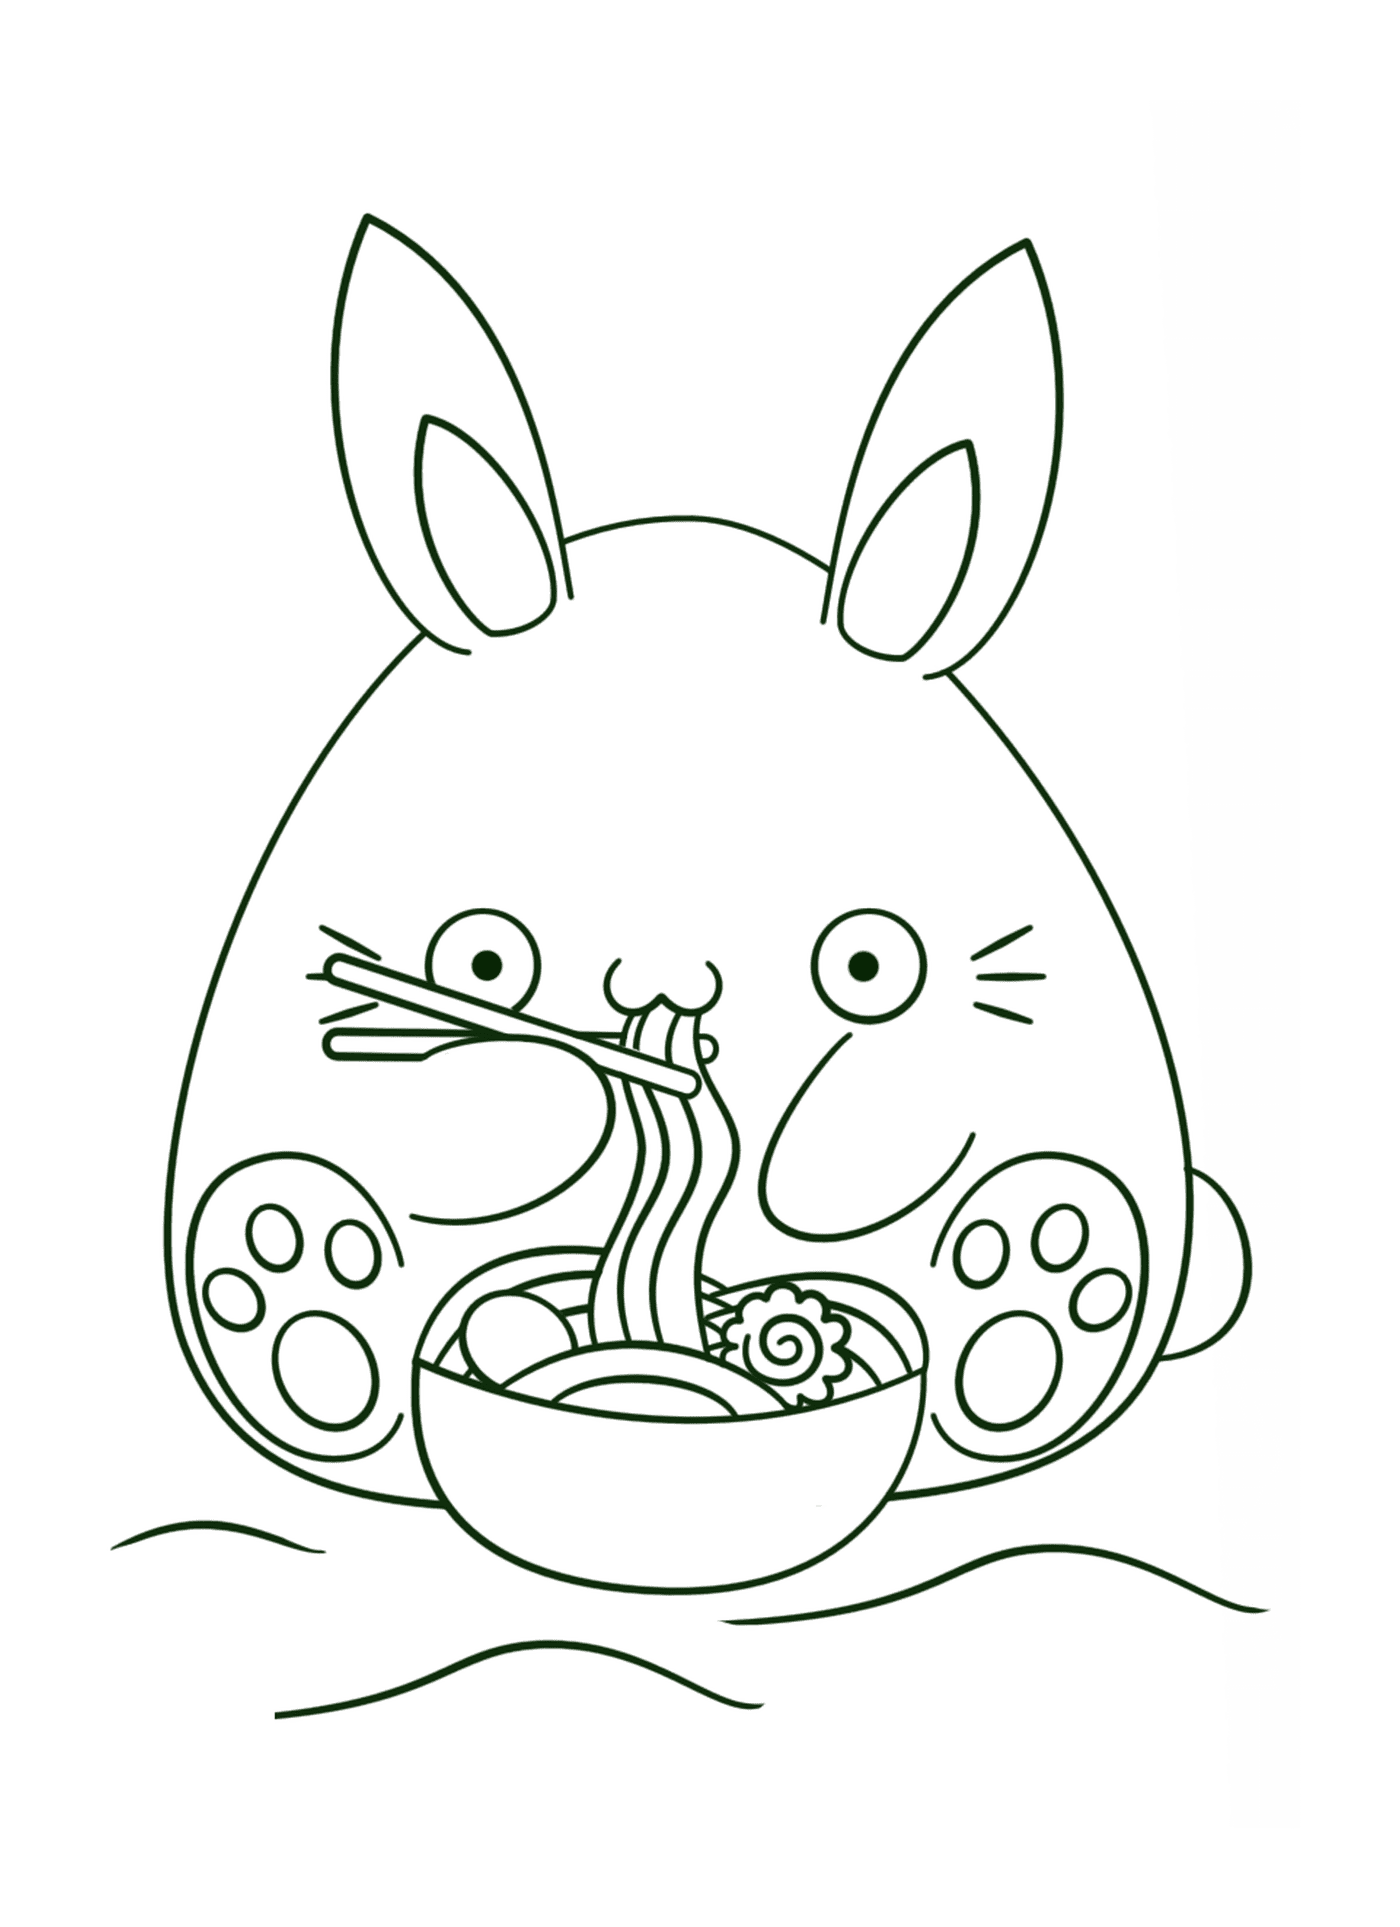  coelho bonito comendo macarrrão 